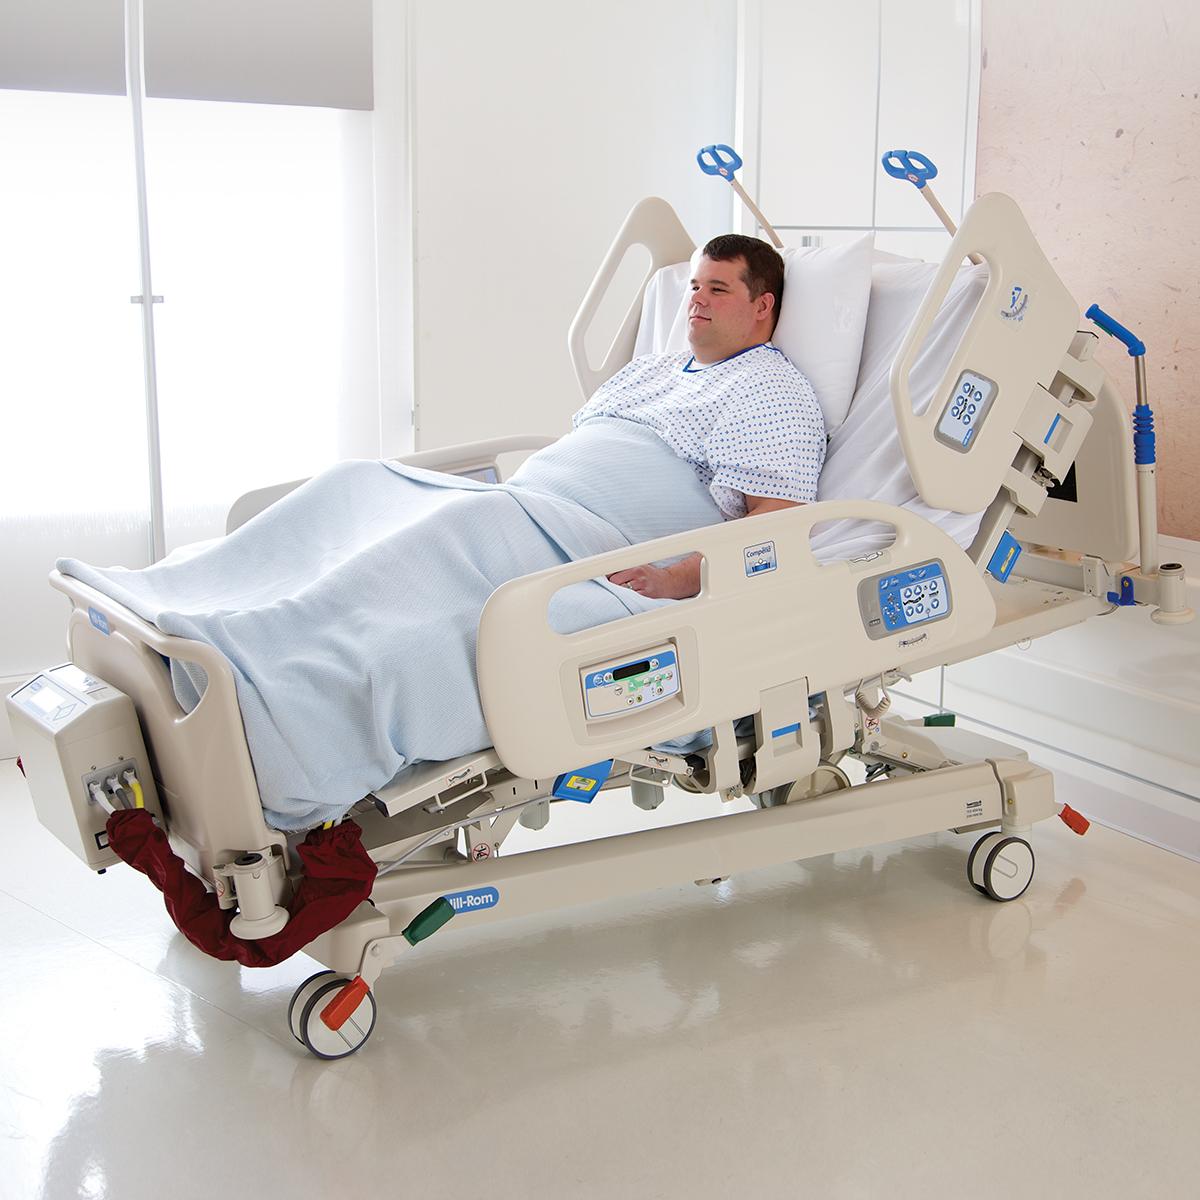 La fonction FlexAfoot permet d'allonger rapidement le lit bariatrique Compella pour s'adapter aux patients de grande taille.